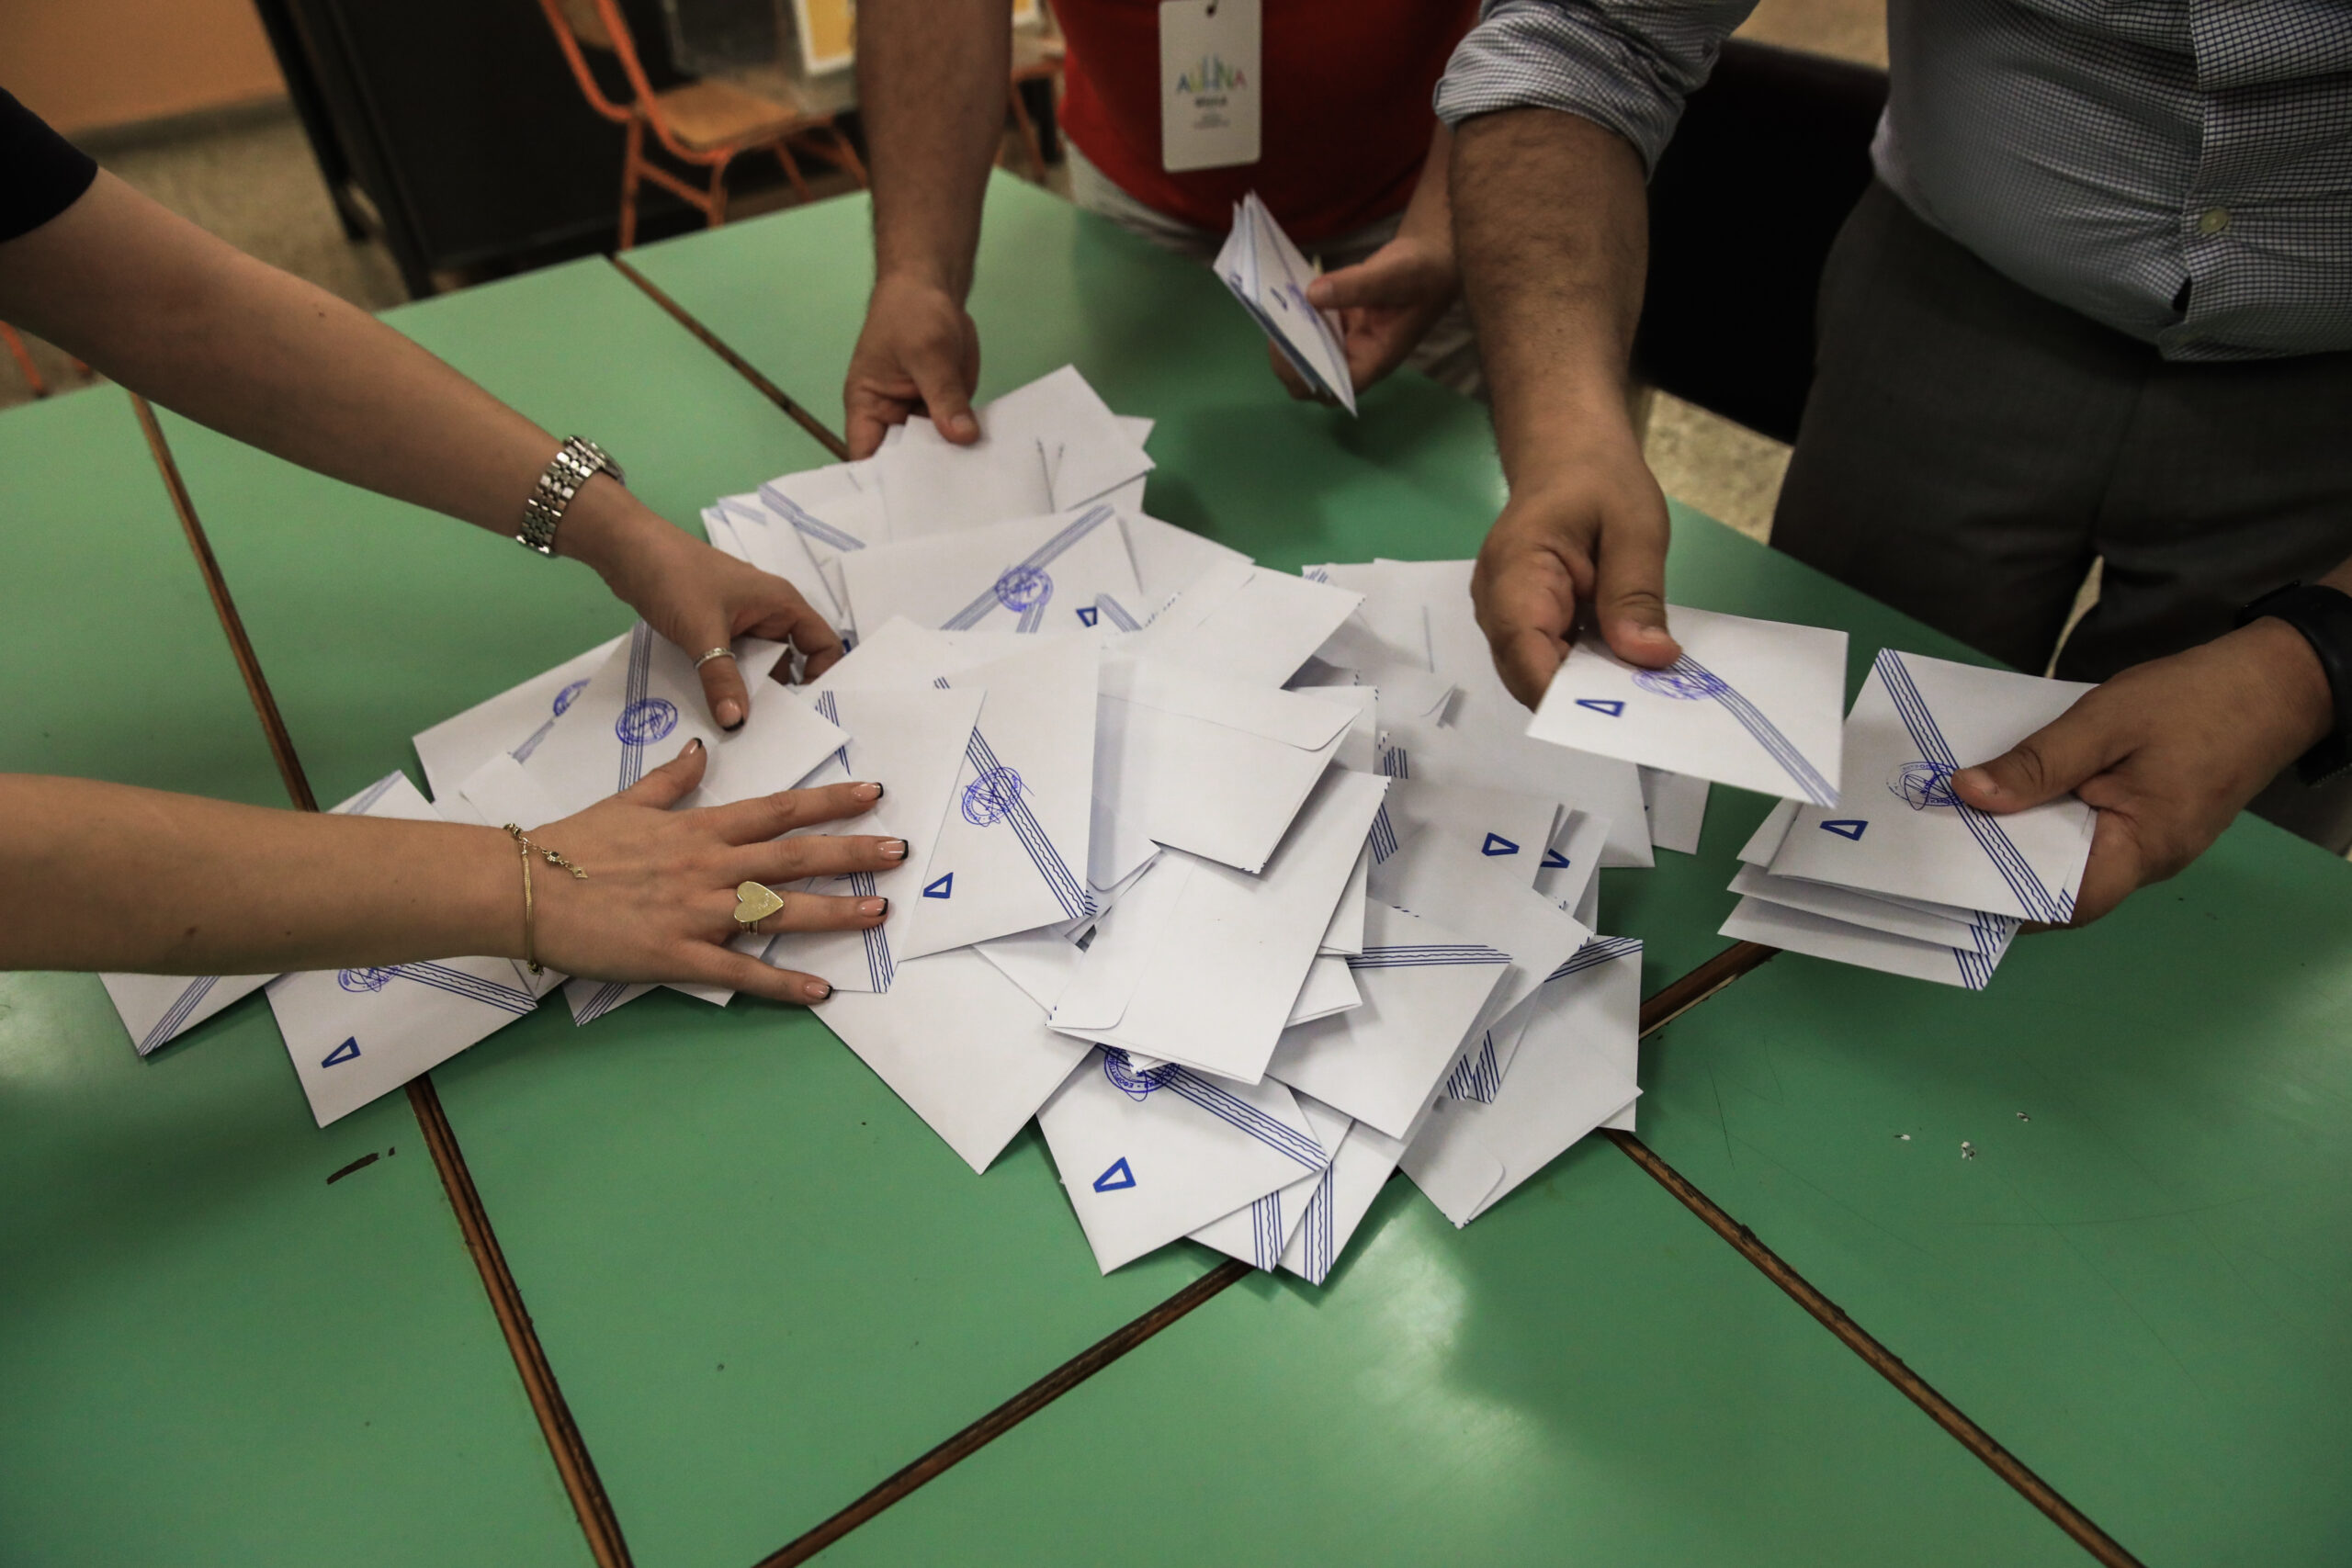 Ηράκλειο: Οι Ζ. Δοξαστάκης, Μ. Μενεγάκης και Μ. Φραγκούλης νικητές στον Β’ γύρο των δημοτικών εκλογών